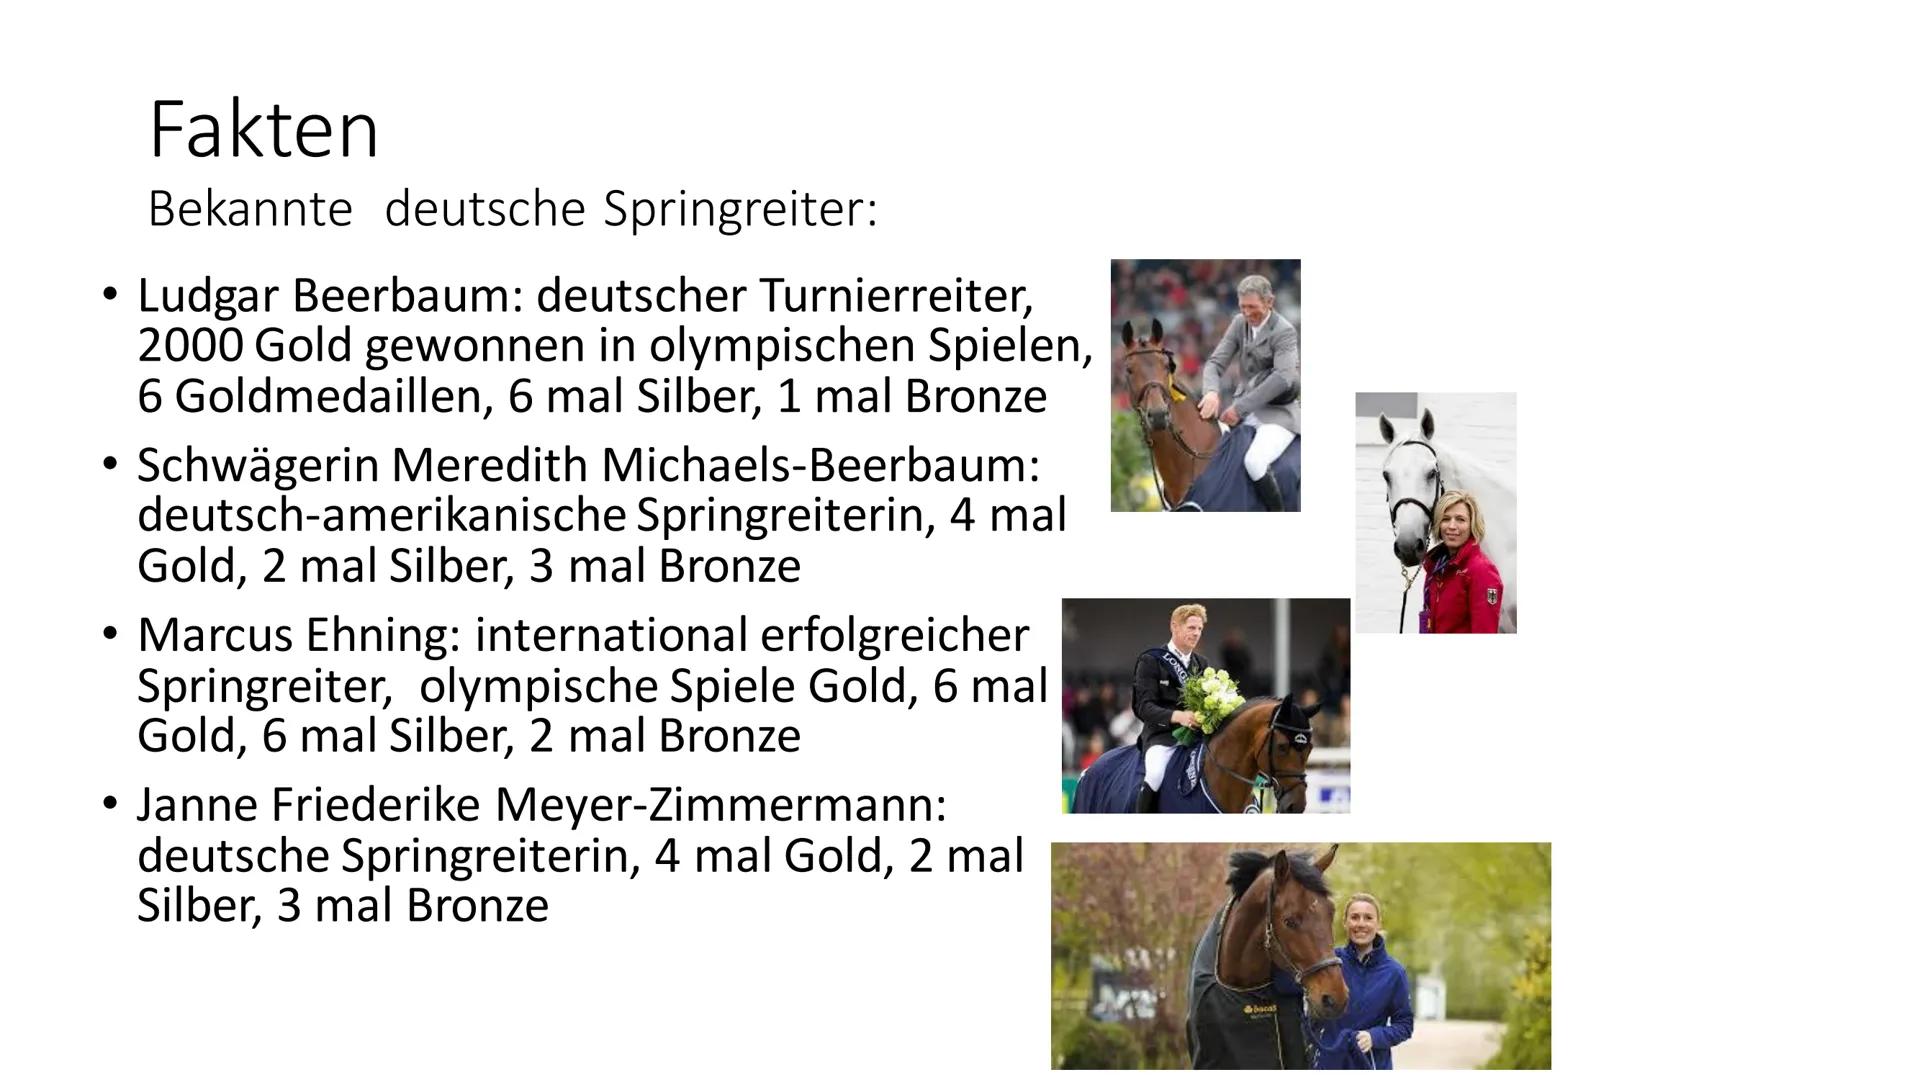 Sport
Ersatzleistung
Sportart: Springreiten
5
VR-Bank Fläming eG Inhaltsverzeichnis.
• Fakten
• Warum sollte Sport zu einer gesunden Lebensw